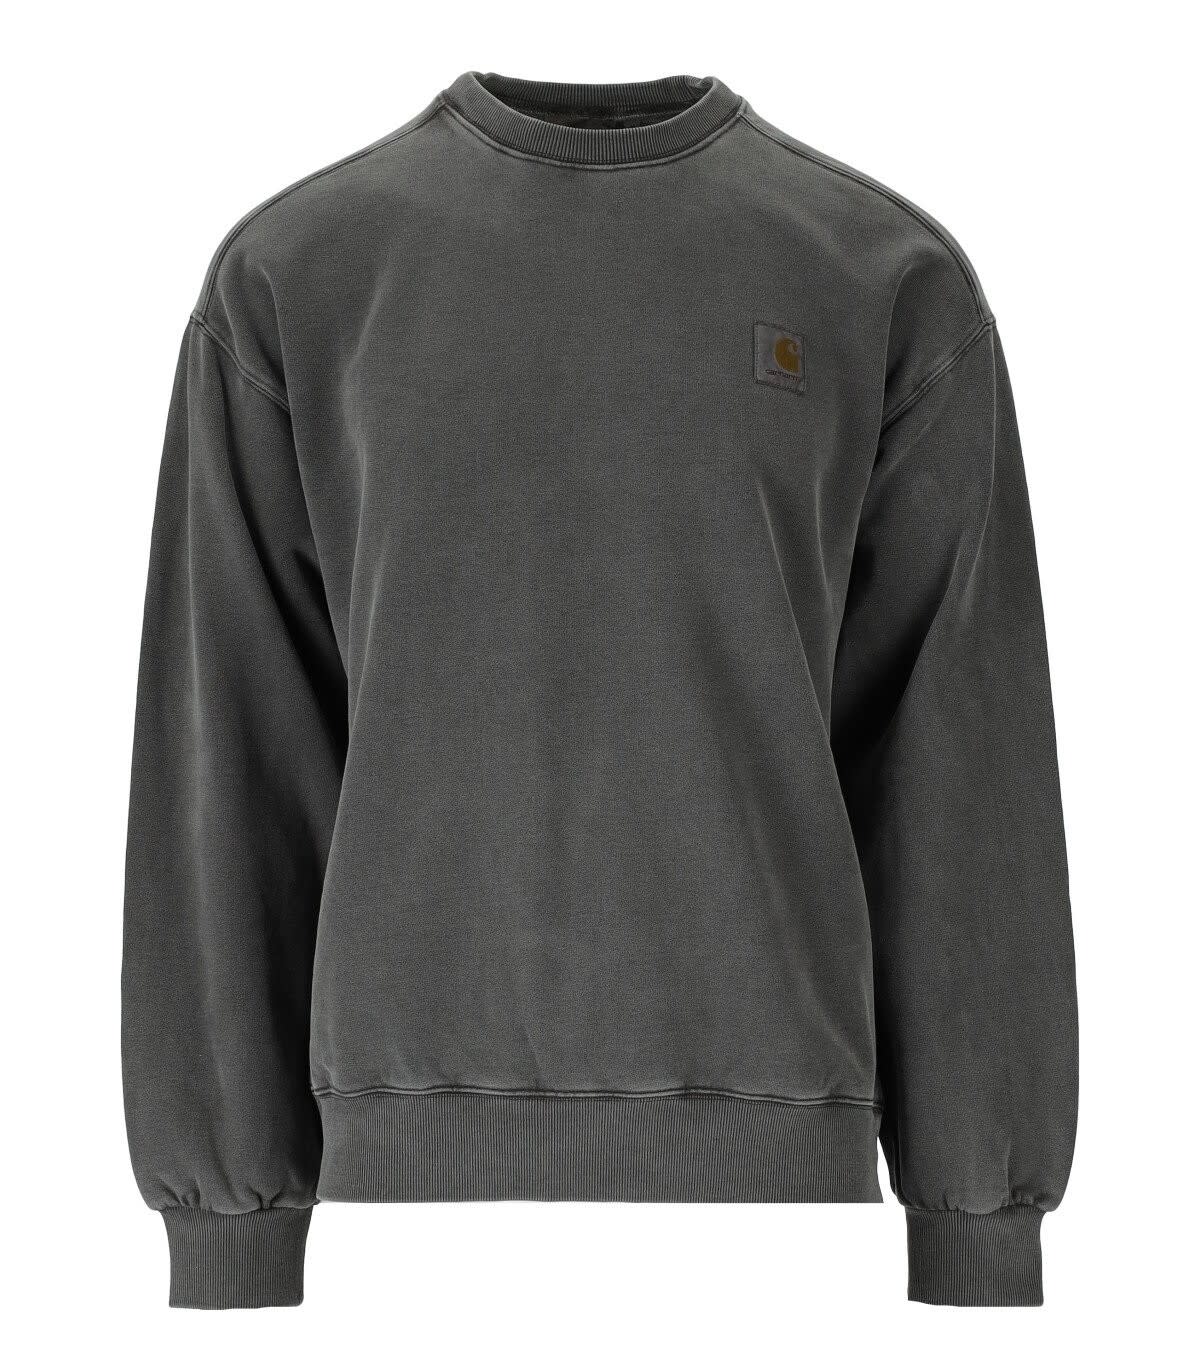 Carhartt Wip Vista Anthracite Grey Sweatshirt